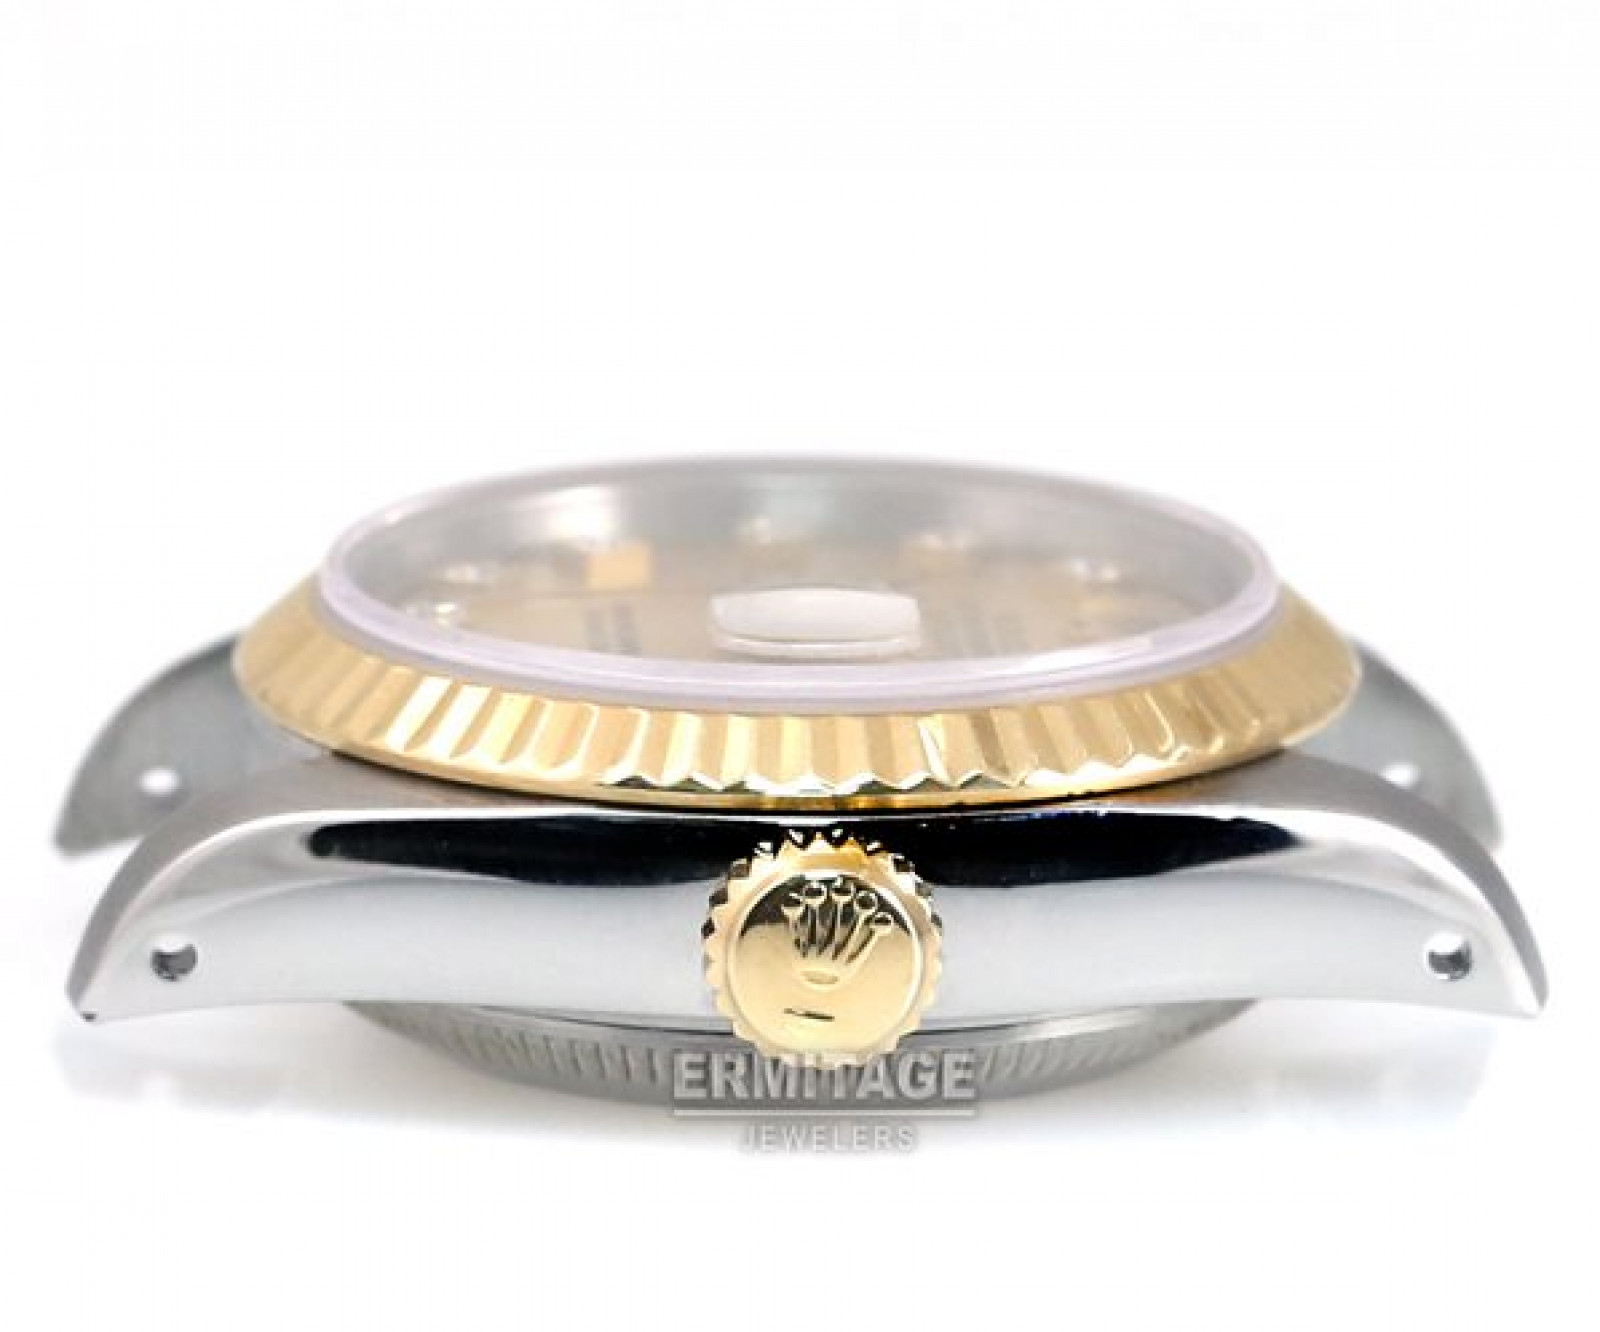 Diamond Ladies Rolex Datejust 69173 with Warranty